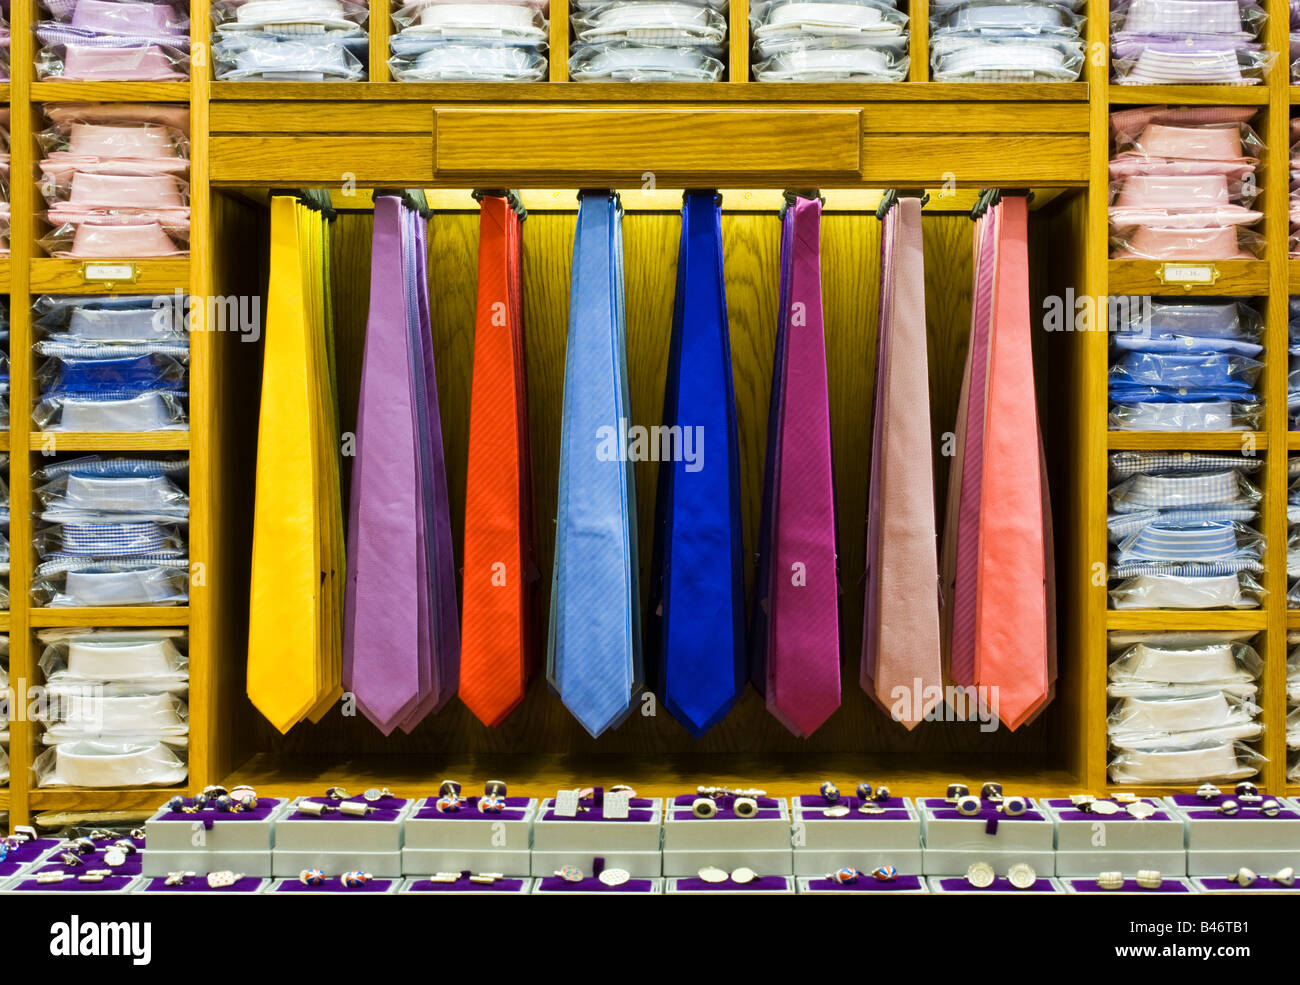 Tie rack ties immagini e fotografie stock ad alta risoluzione - Alamy